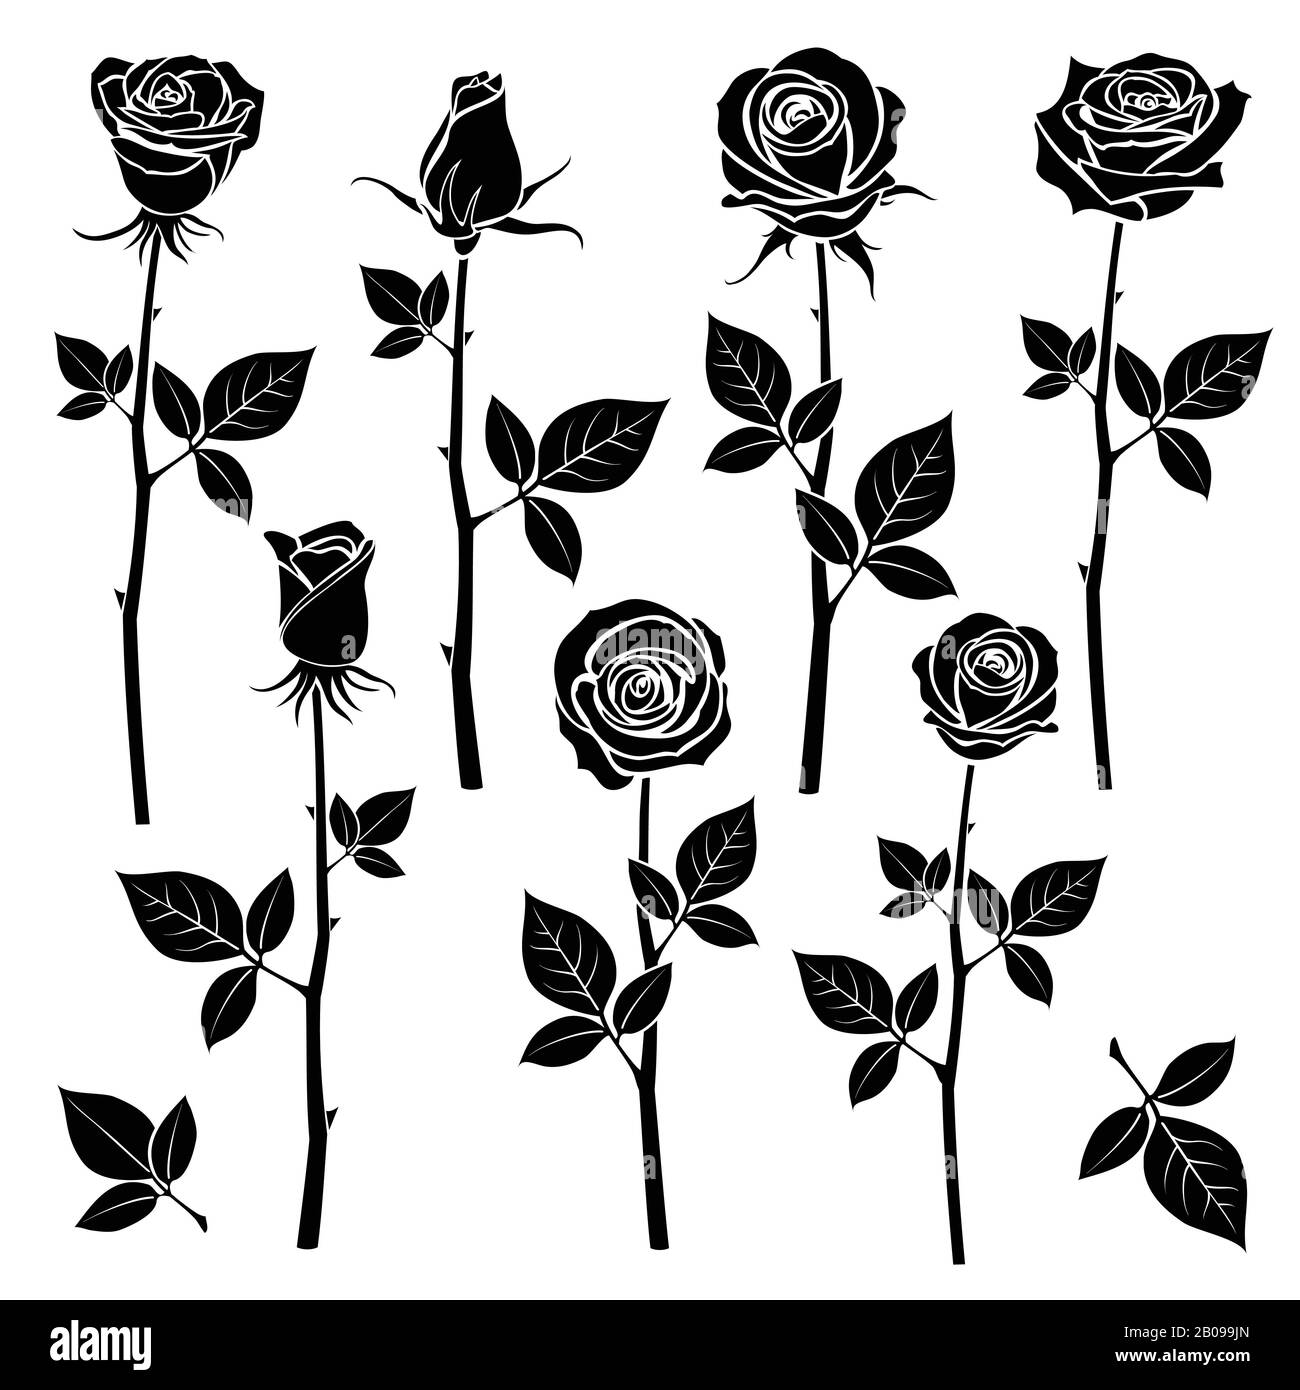 Rosa nera Immagini Vettoriali Stock - Alamy